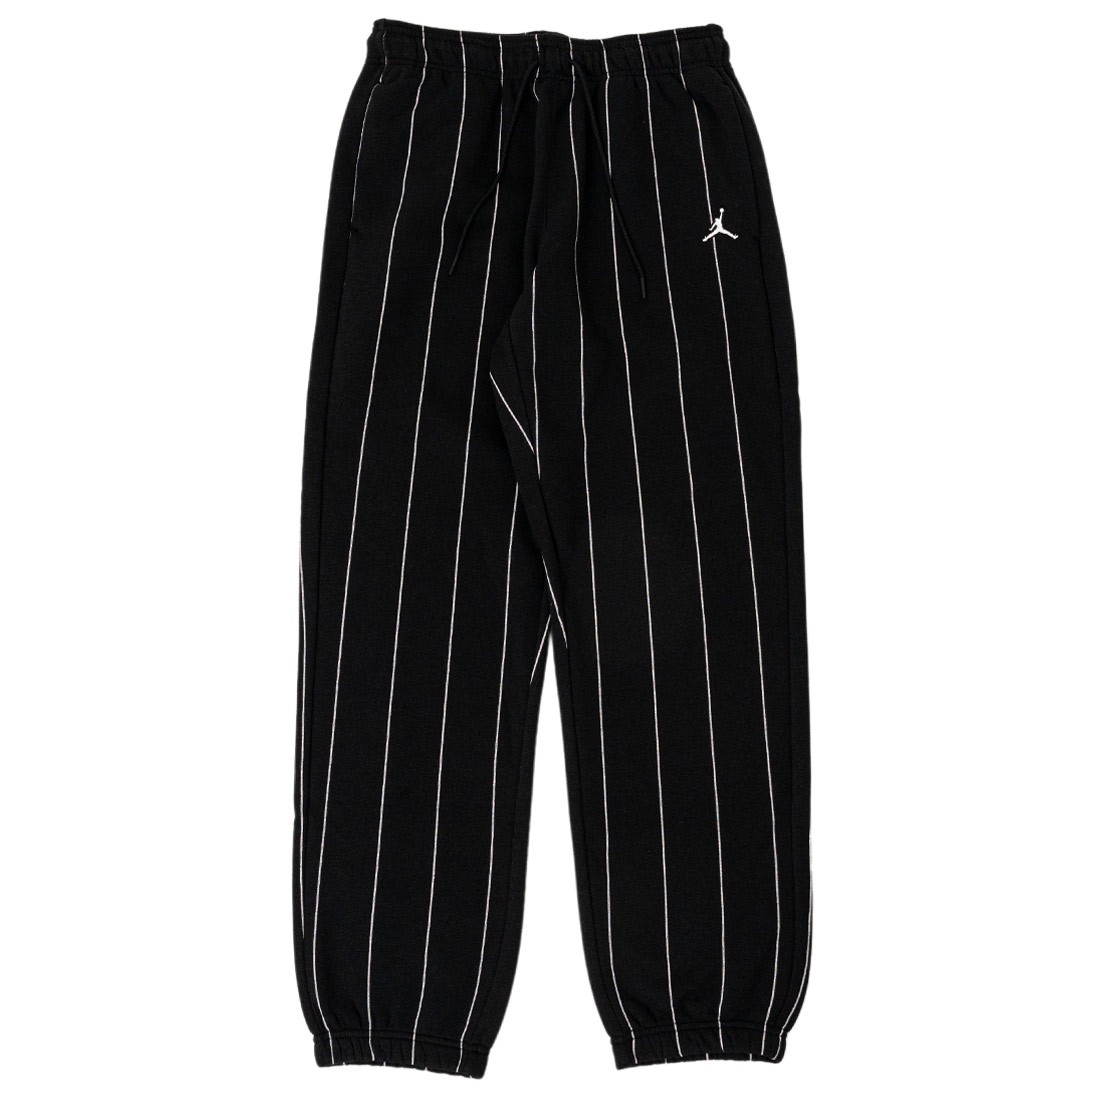 Jordan Women Brooklyn Fleece Striped Pants (black)